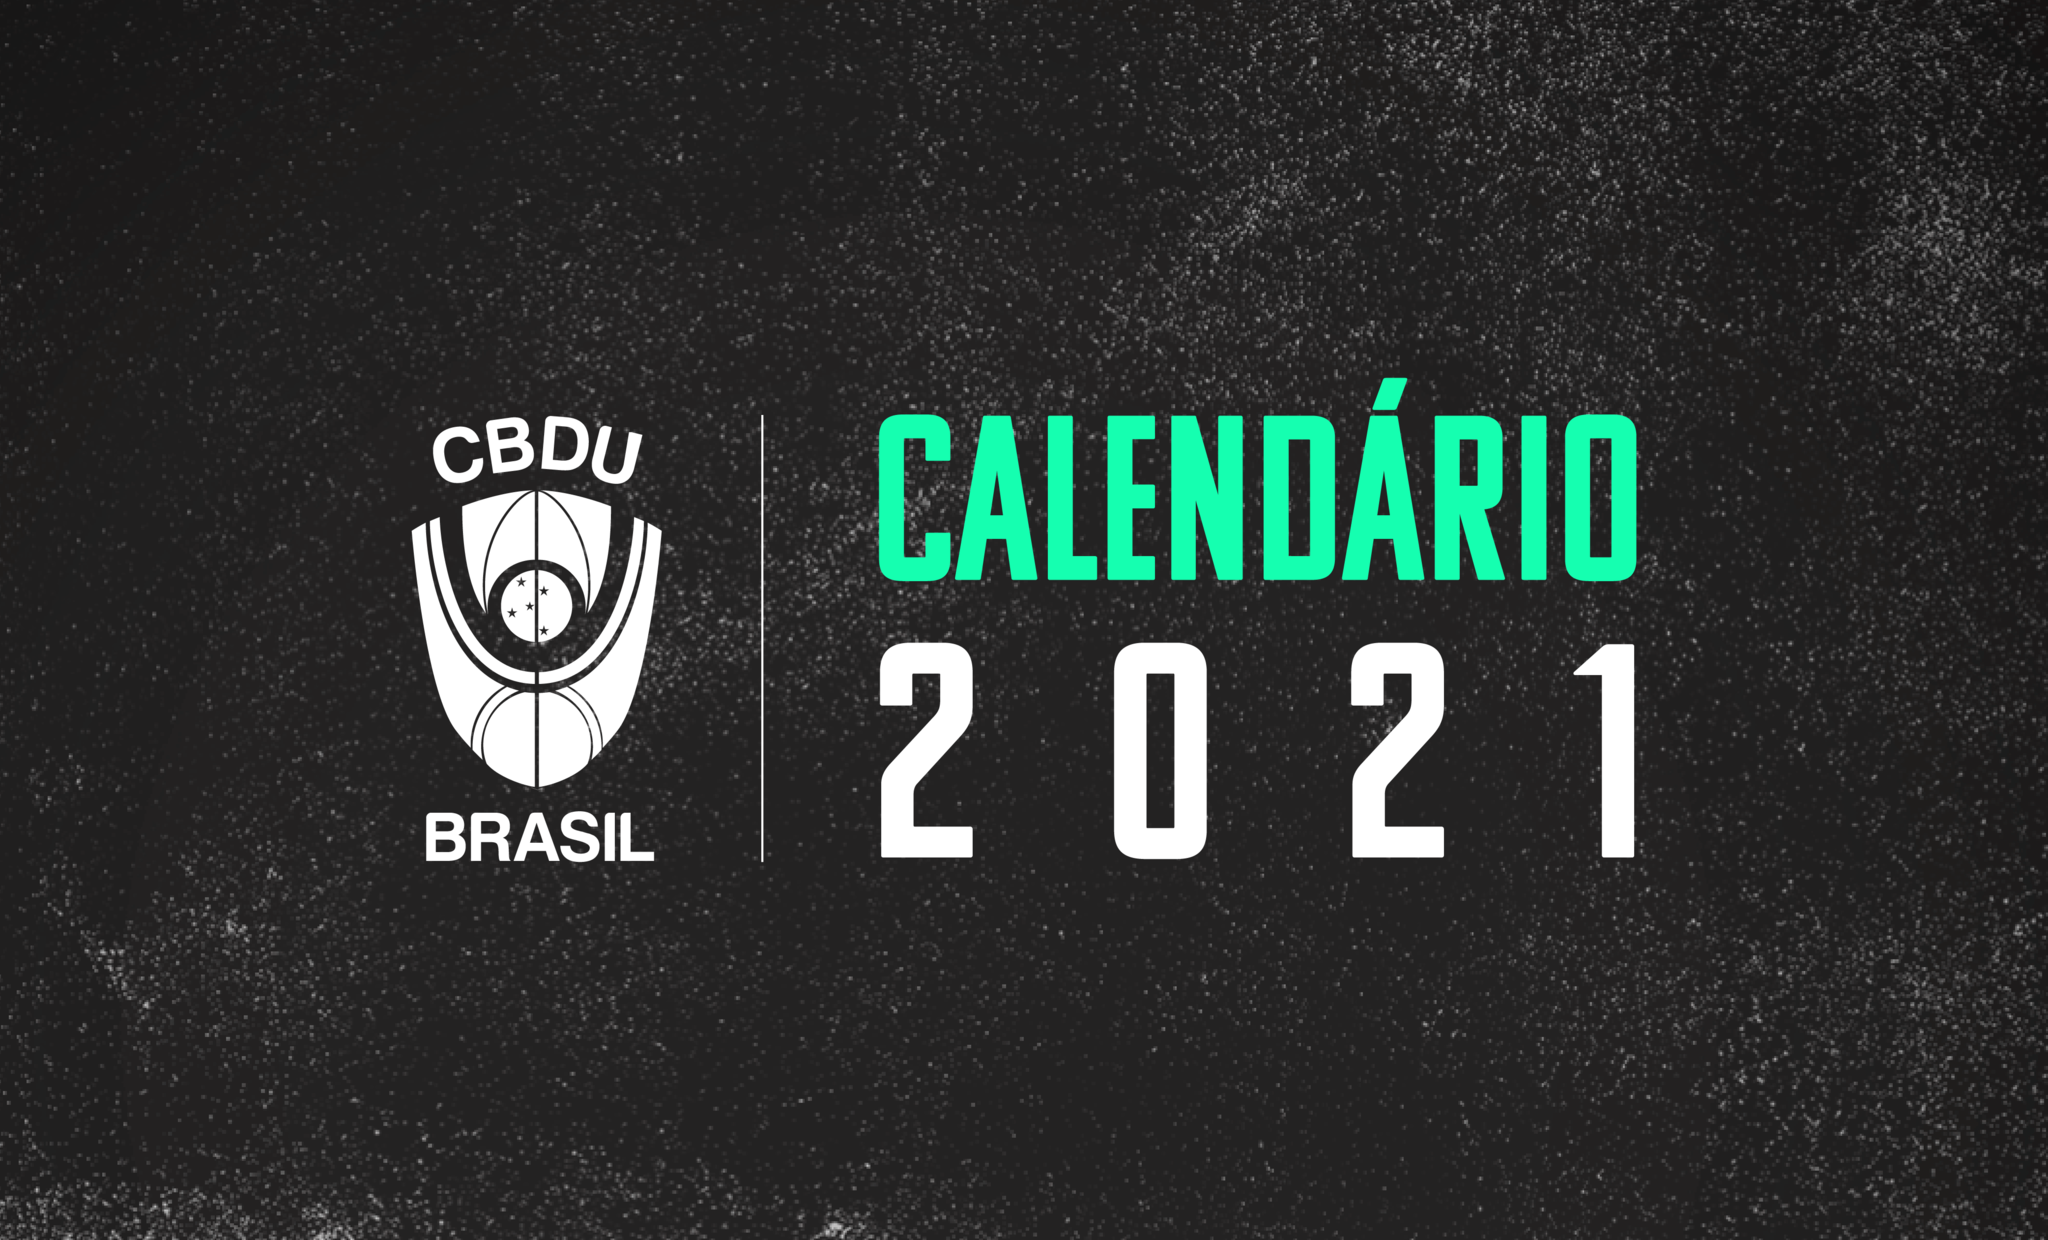 Calendário CBDU 2021